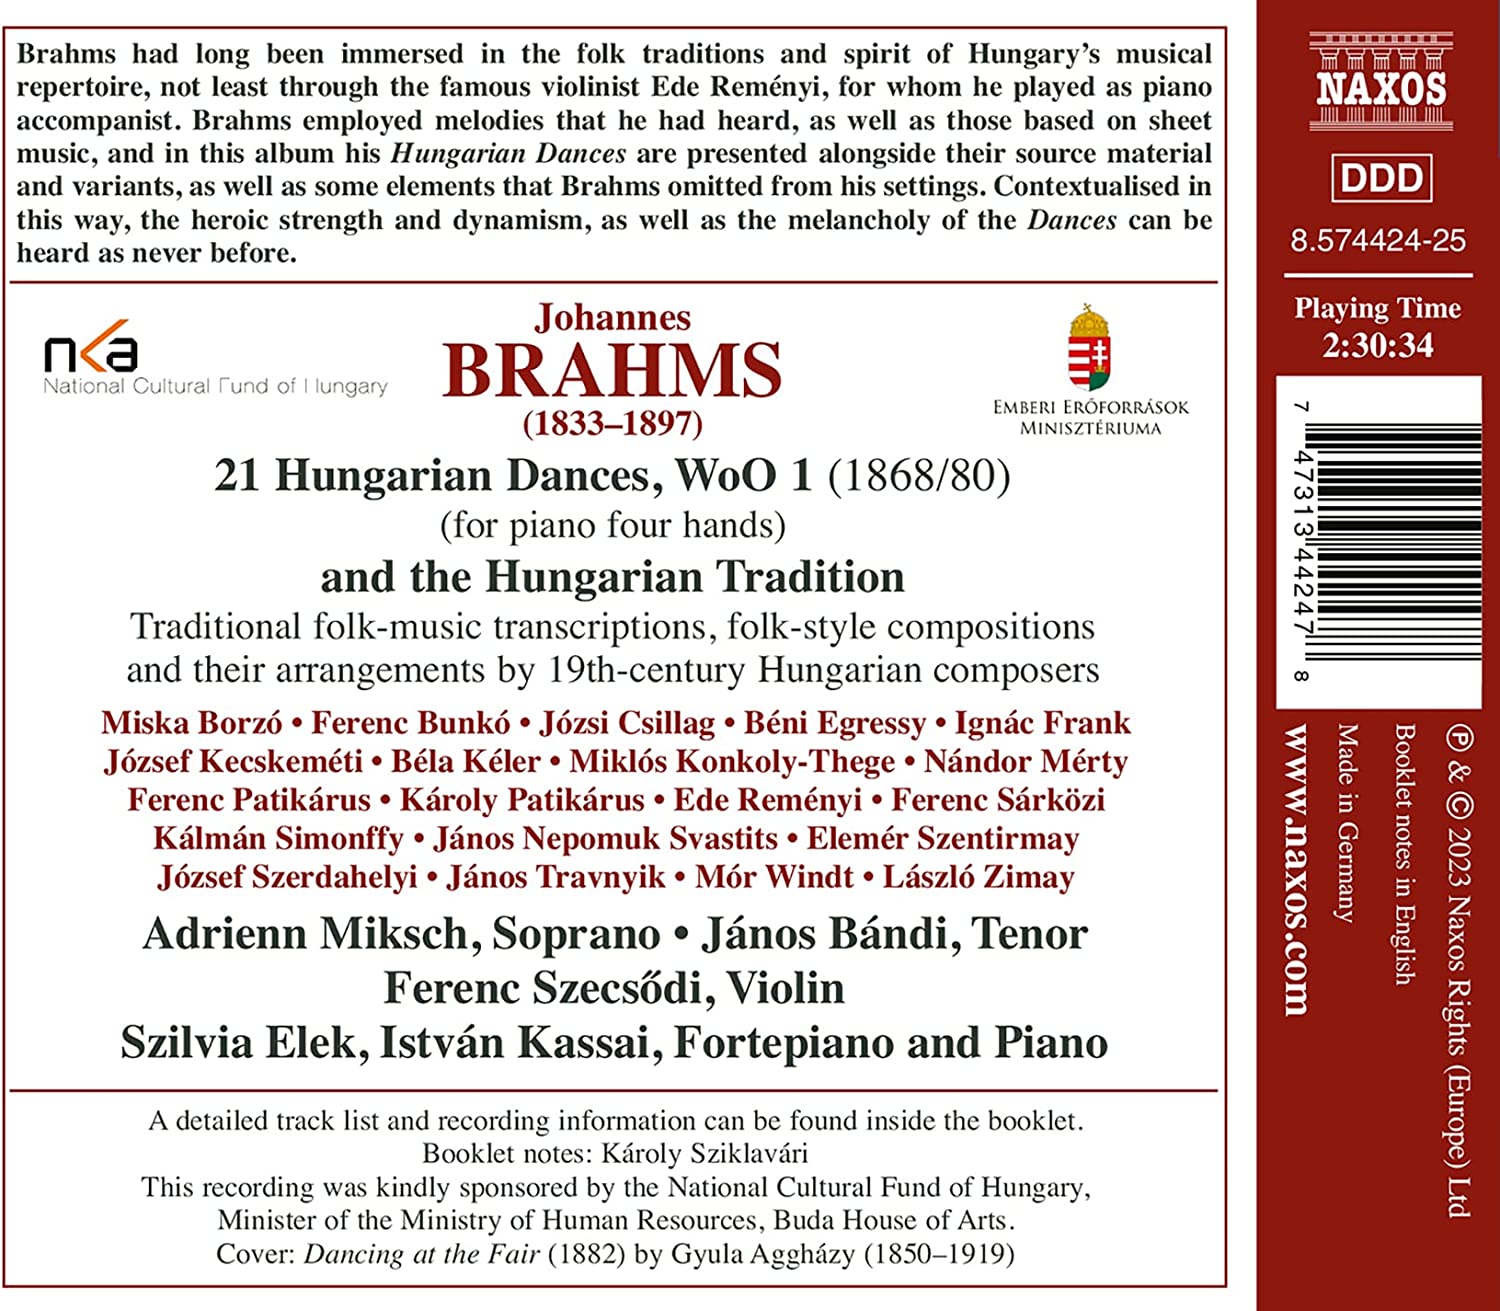 브람스: 헝가리 무곡, 헝가리 작곡가들의 민속 음악 관련 작품집 (Johannes Brahms: Hungarian Dances and the Hungarian Tradition)